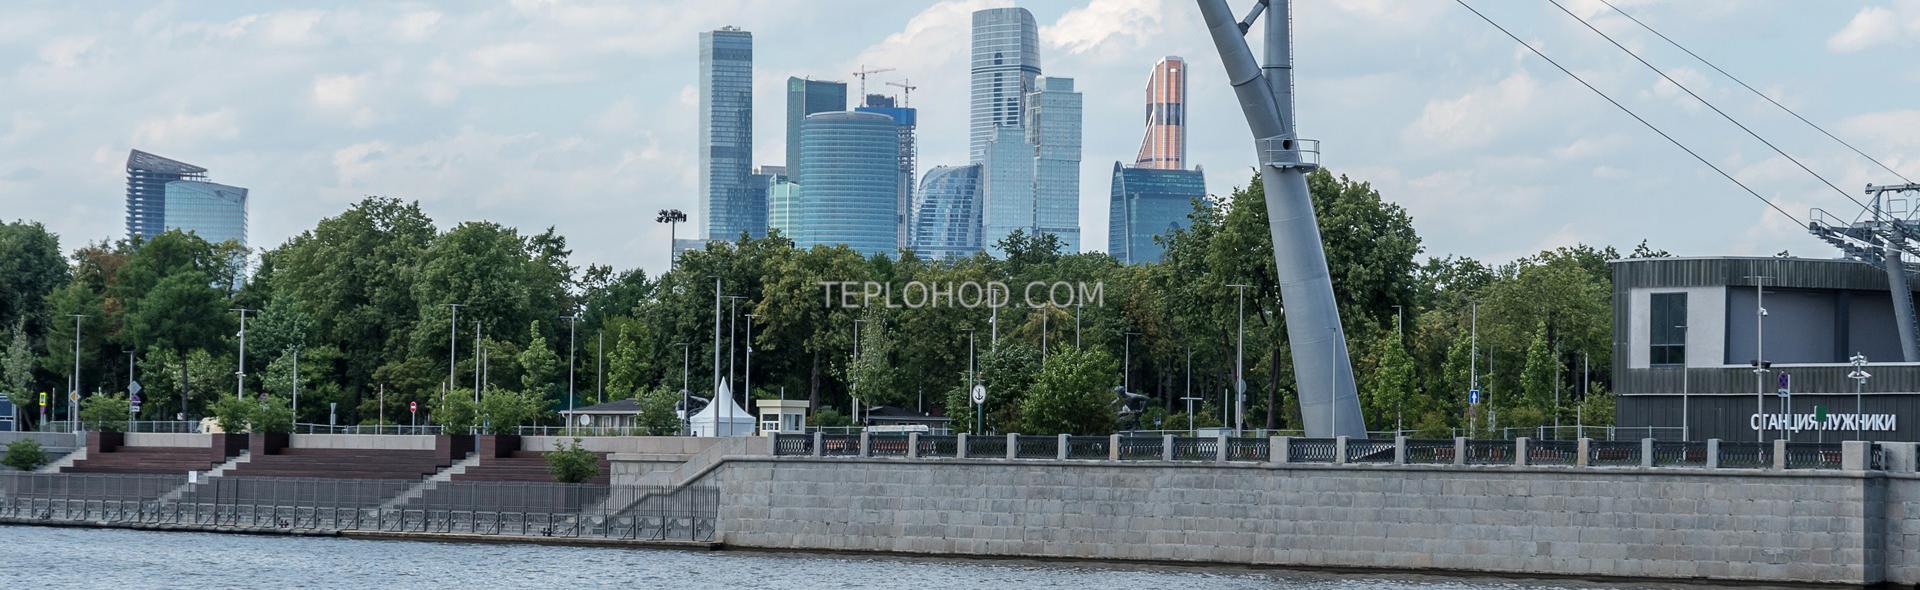 Экскурсия на теплоходе с гидом "Воробьевы горы" по всему центру Москвы 